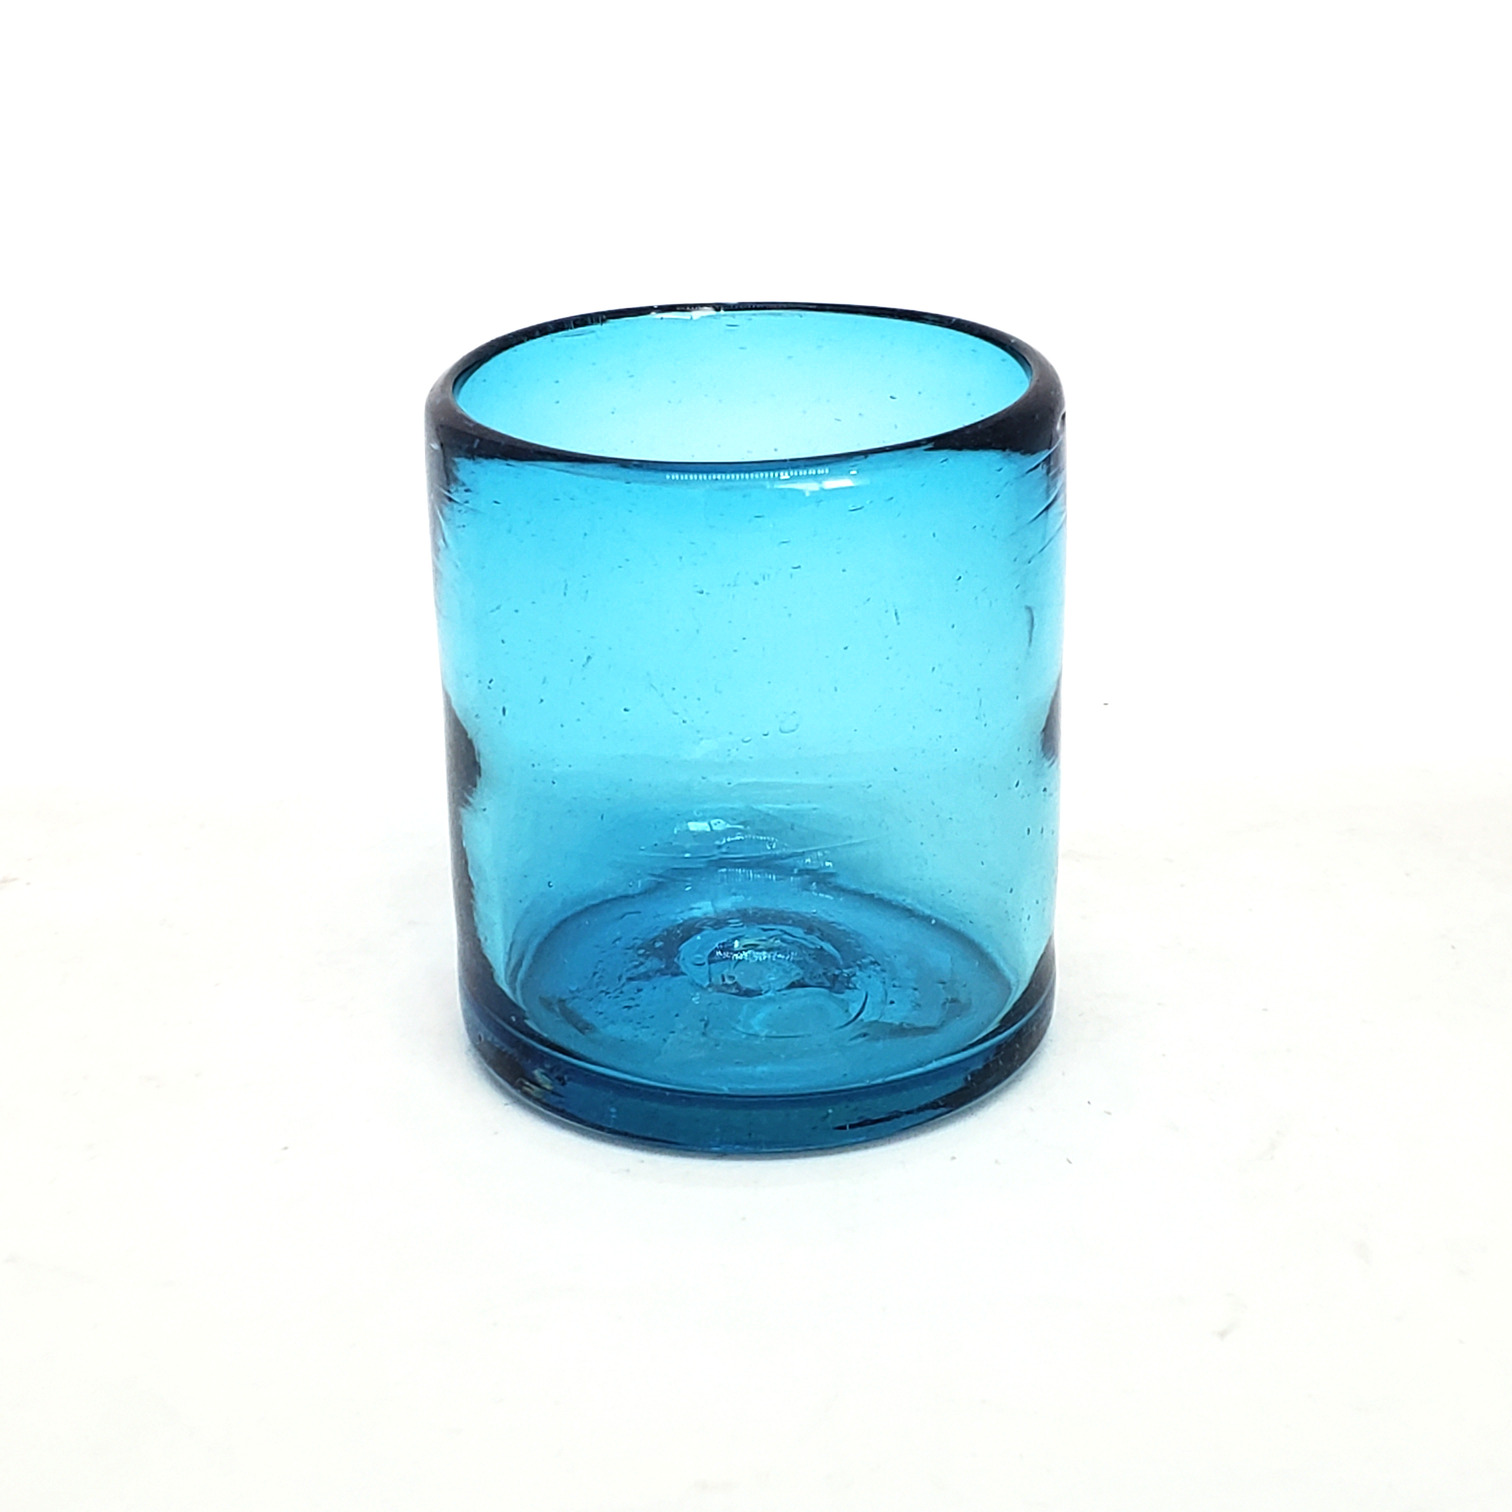 Colores Solidos / Vasos chicos 9 oz color Azul Aguamarina Sólido (set de 6) / Éstos artesanales vasos le darán un toque colorido a su bebida favorita.